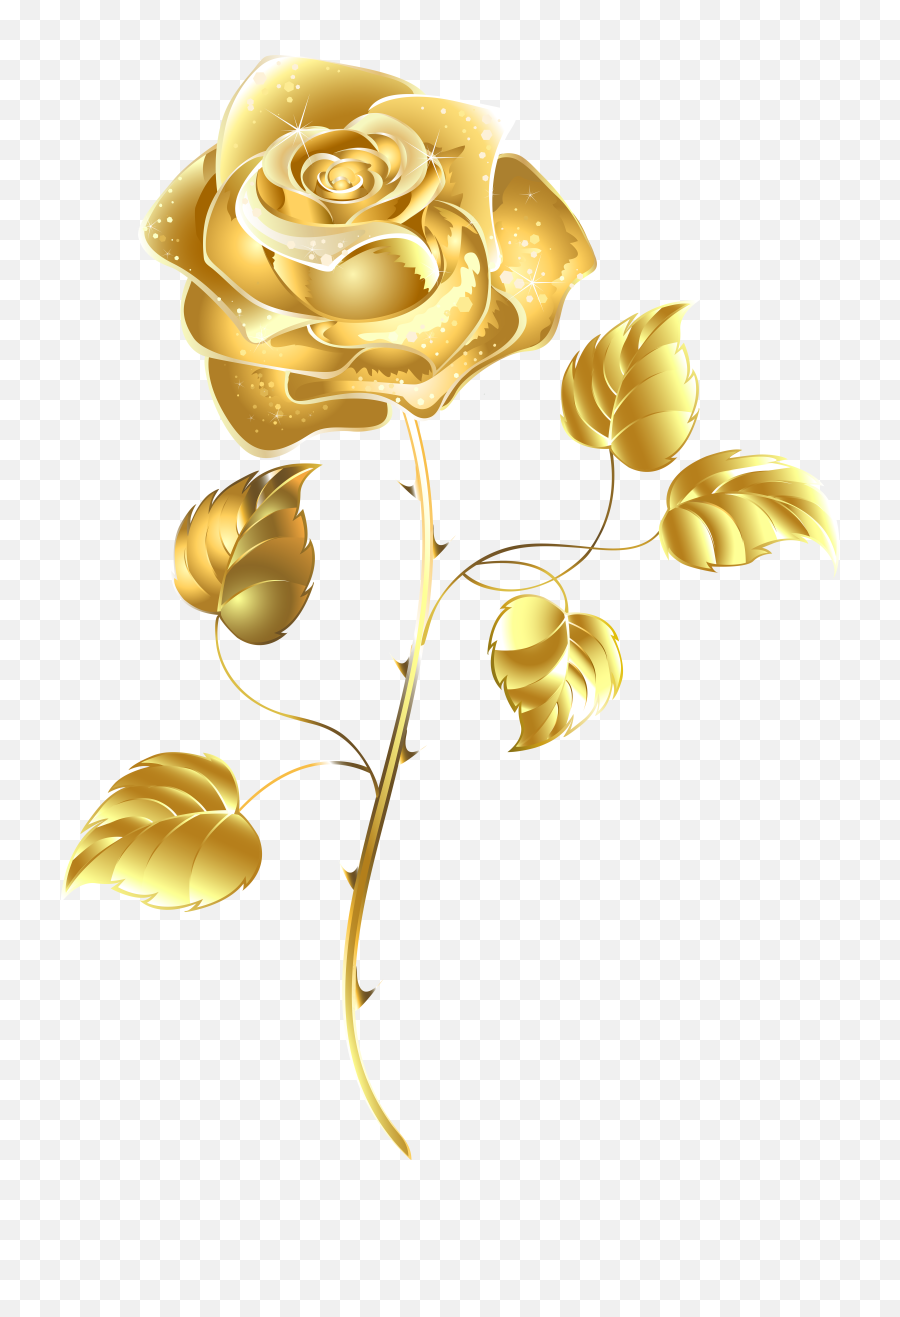 Golden Rose Transparent Image - Transparent Background Gold Flower Png,Rose Transparent